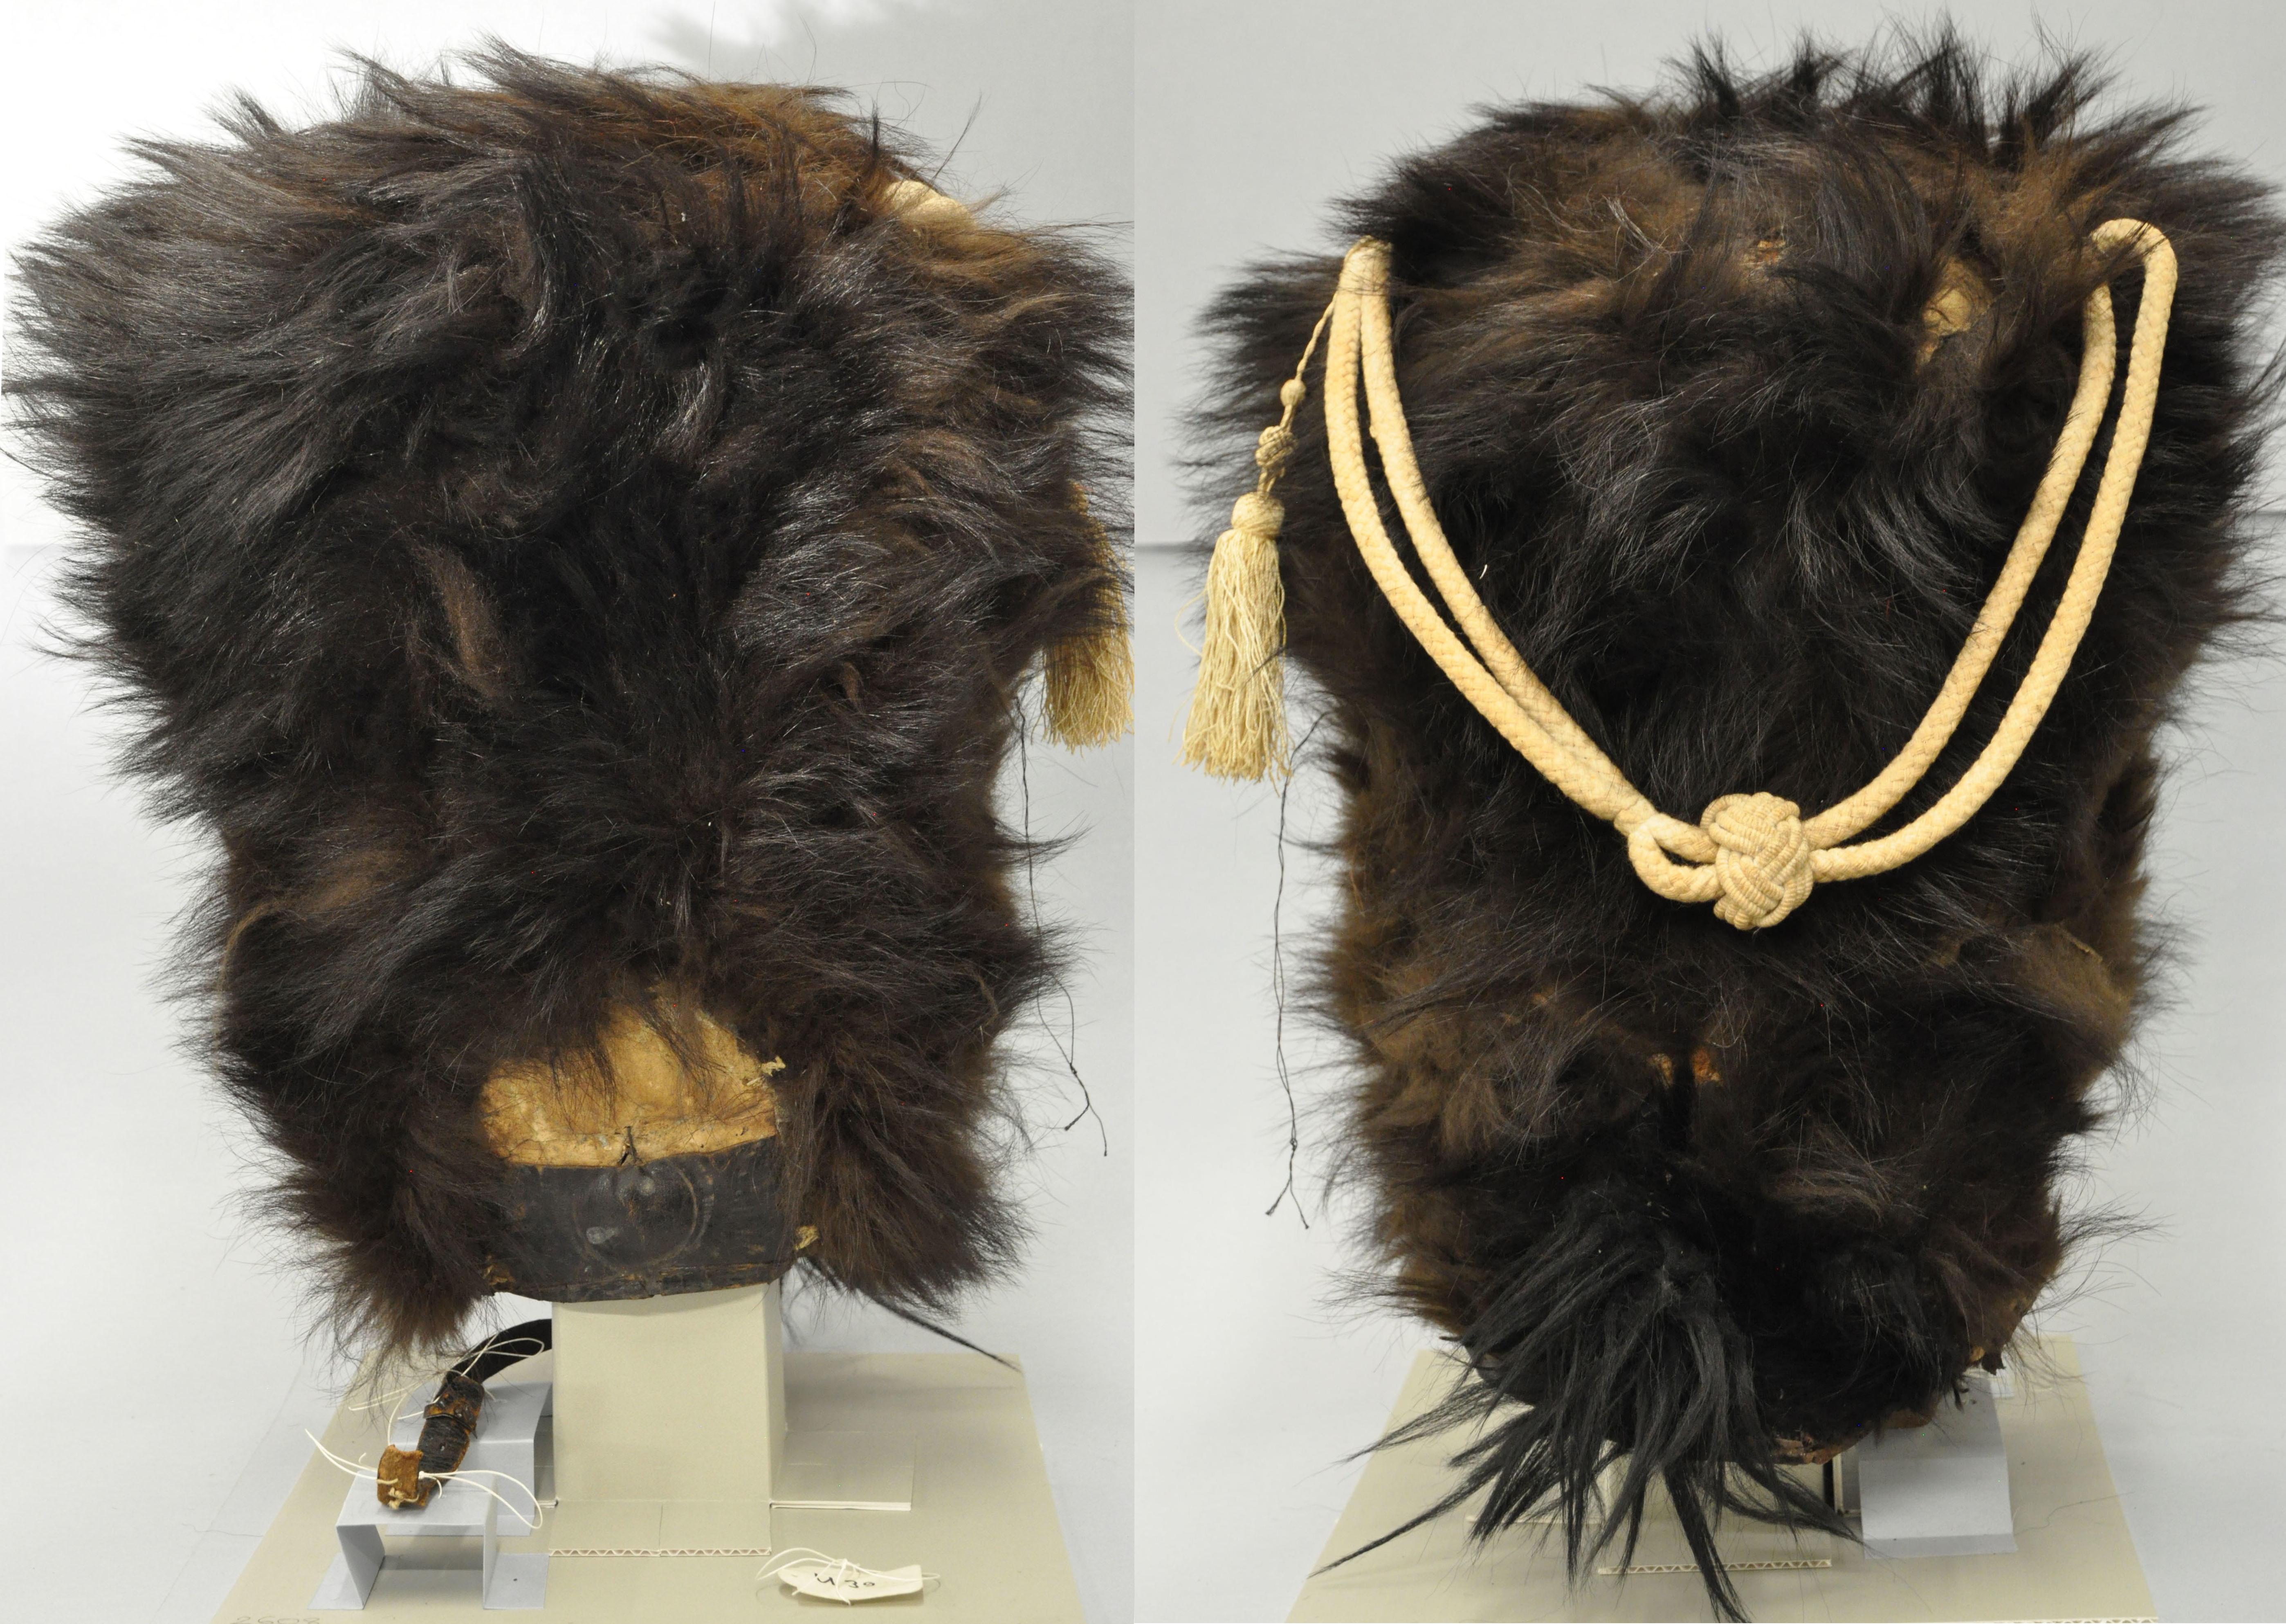 Bild 4: Kopfputz männlich: Grenadiermütze, auch Bärenfellmütze genannt, 1830-1840, Vorder- & Rückseite, Sammlung Museum Burg Zug